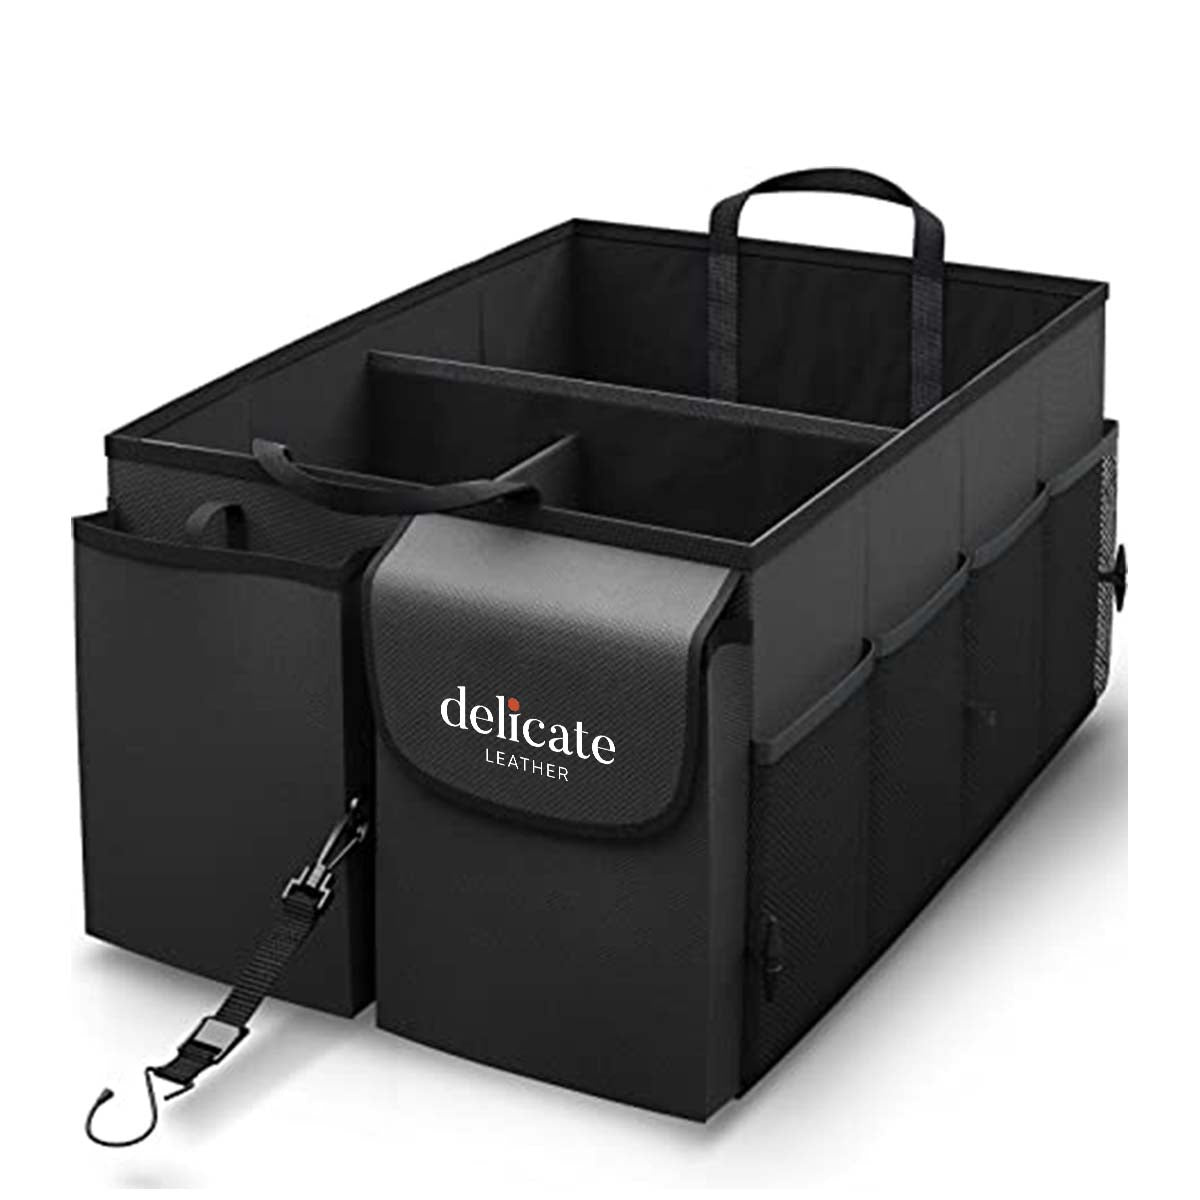 Cadillac Organizer For Car Trunk Box Storage, Car Accessories